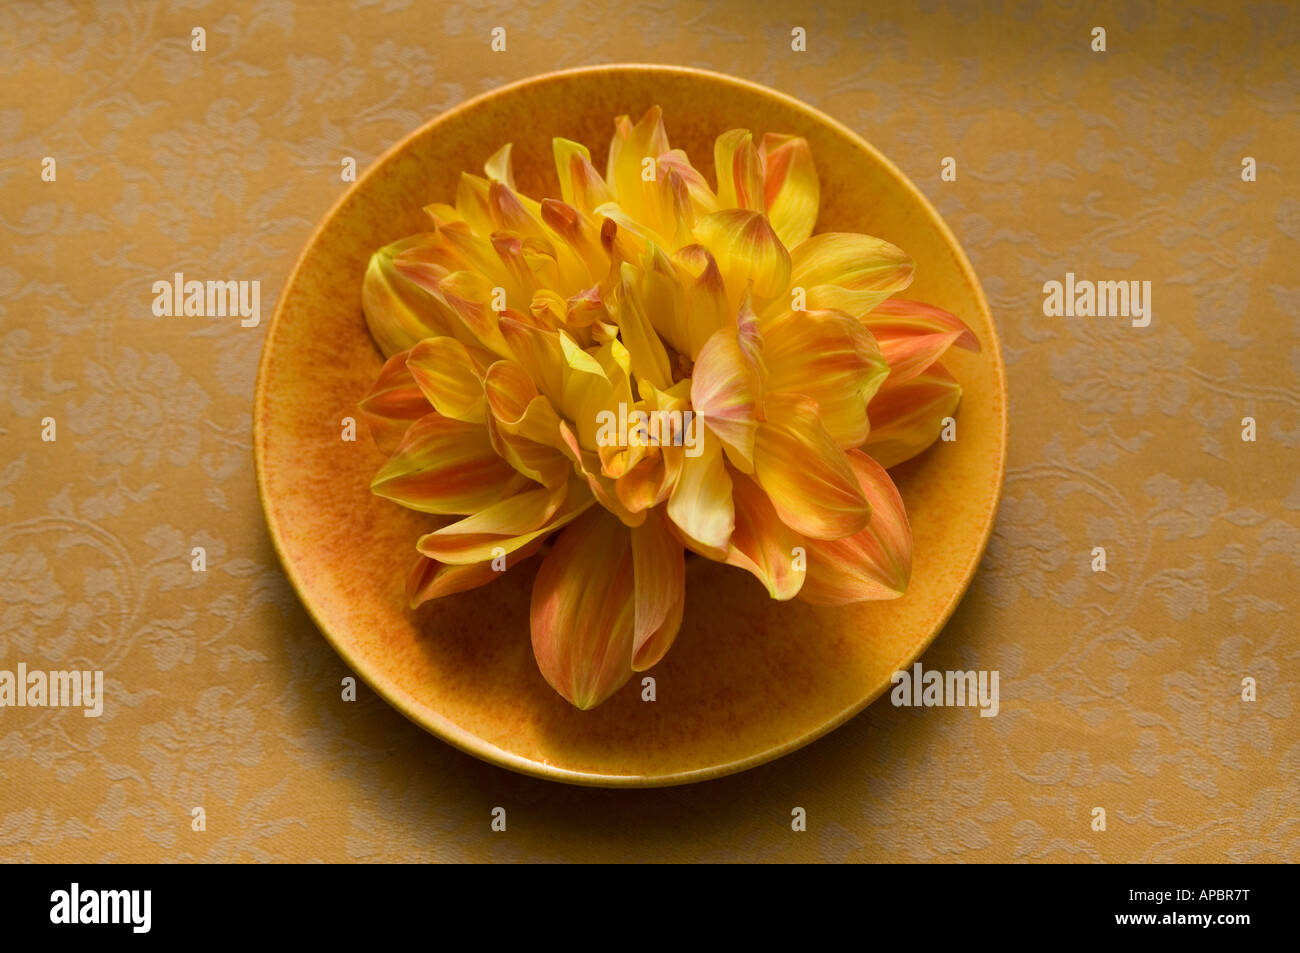 gelbe Blume Dahlie auf Platte Stillleben gelb orange runden Kreis einfach Stockfoto